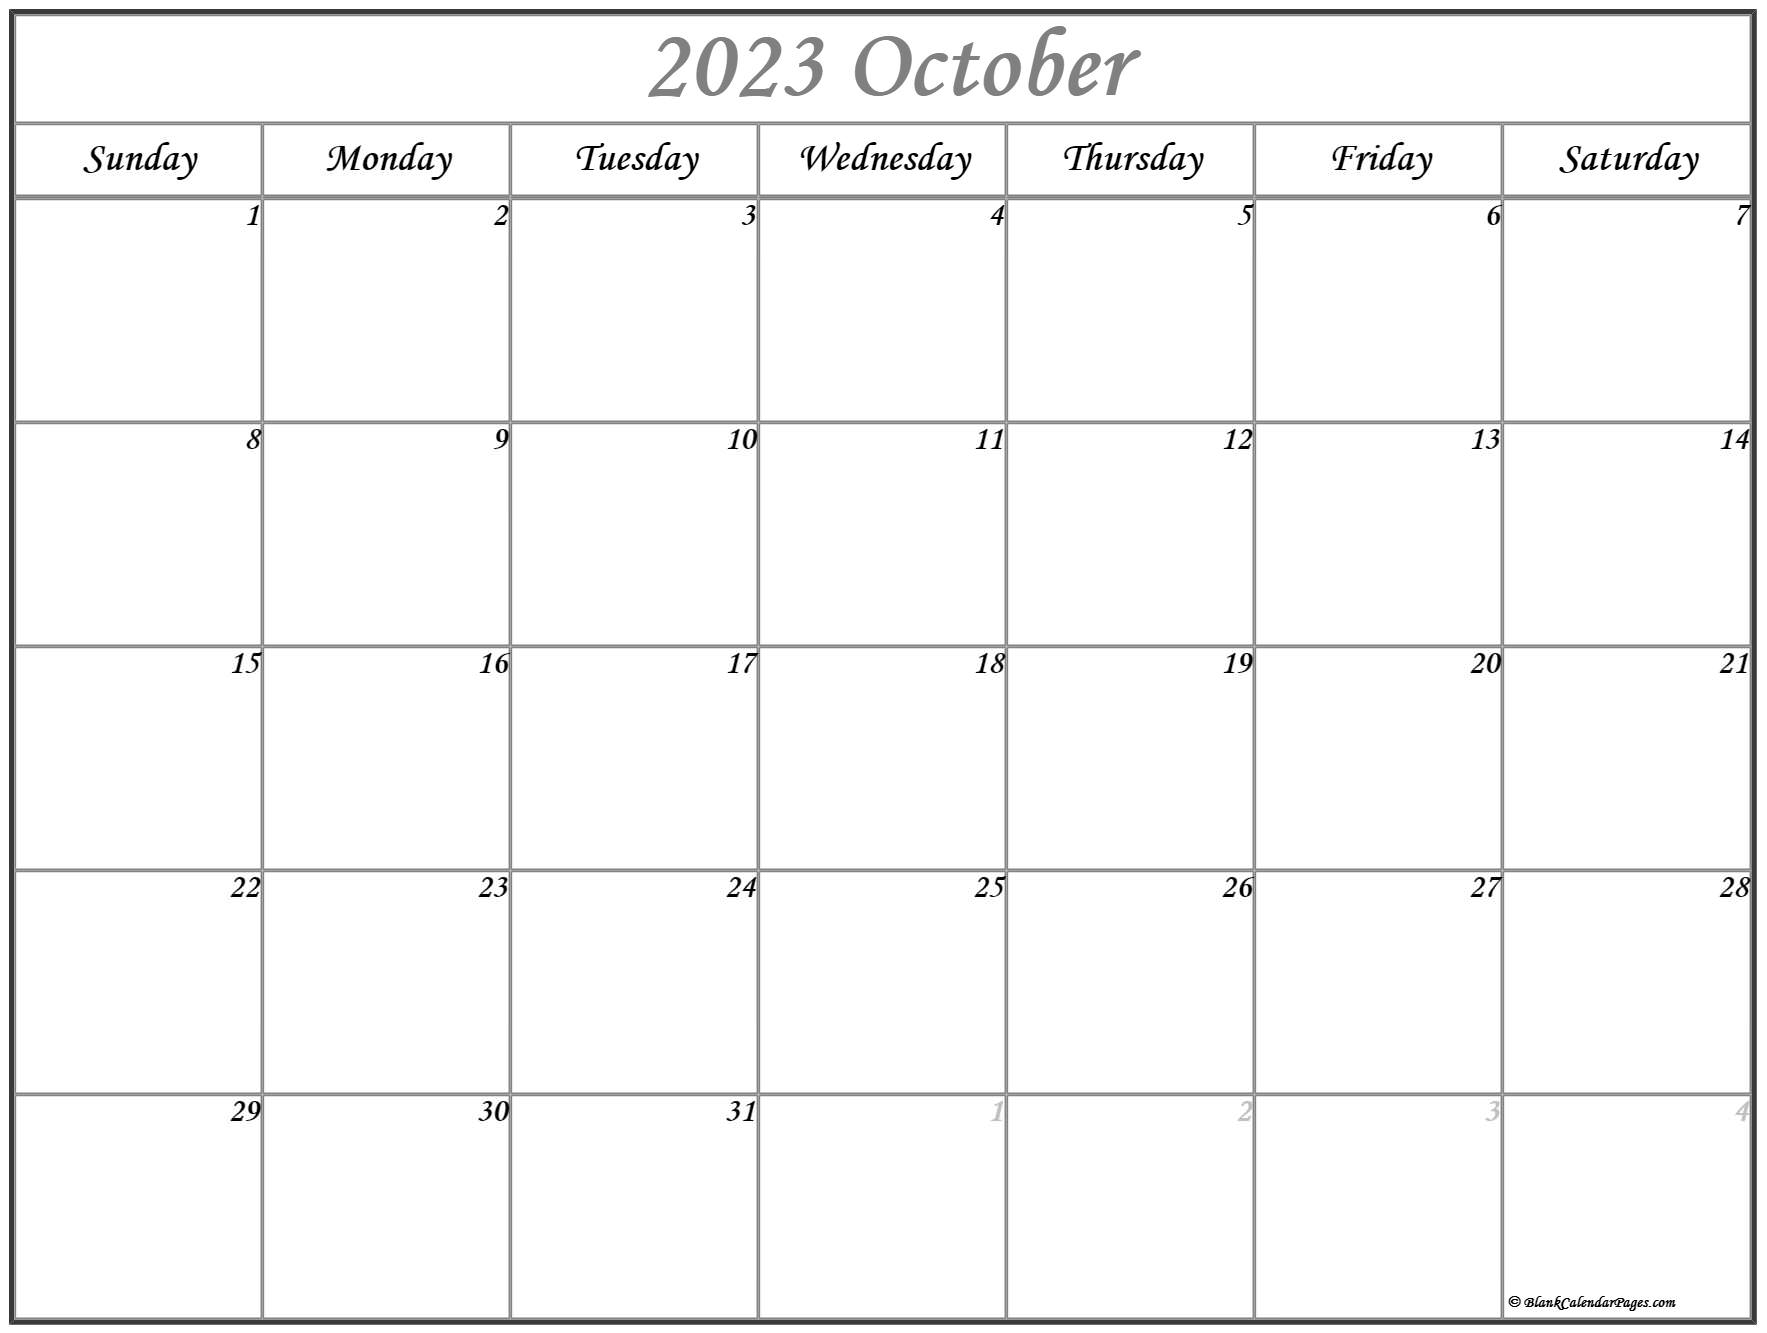 october-2023-calendar-free-printable-calendar-october-2023-calendar